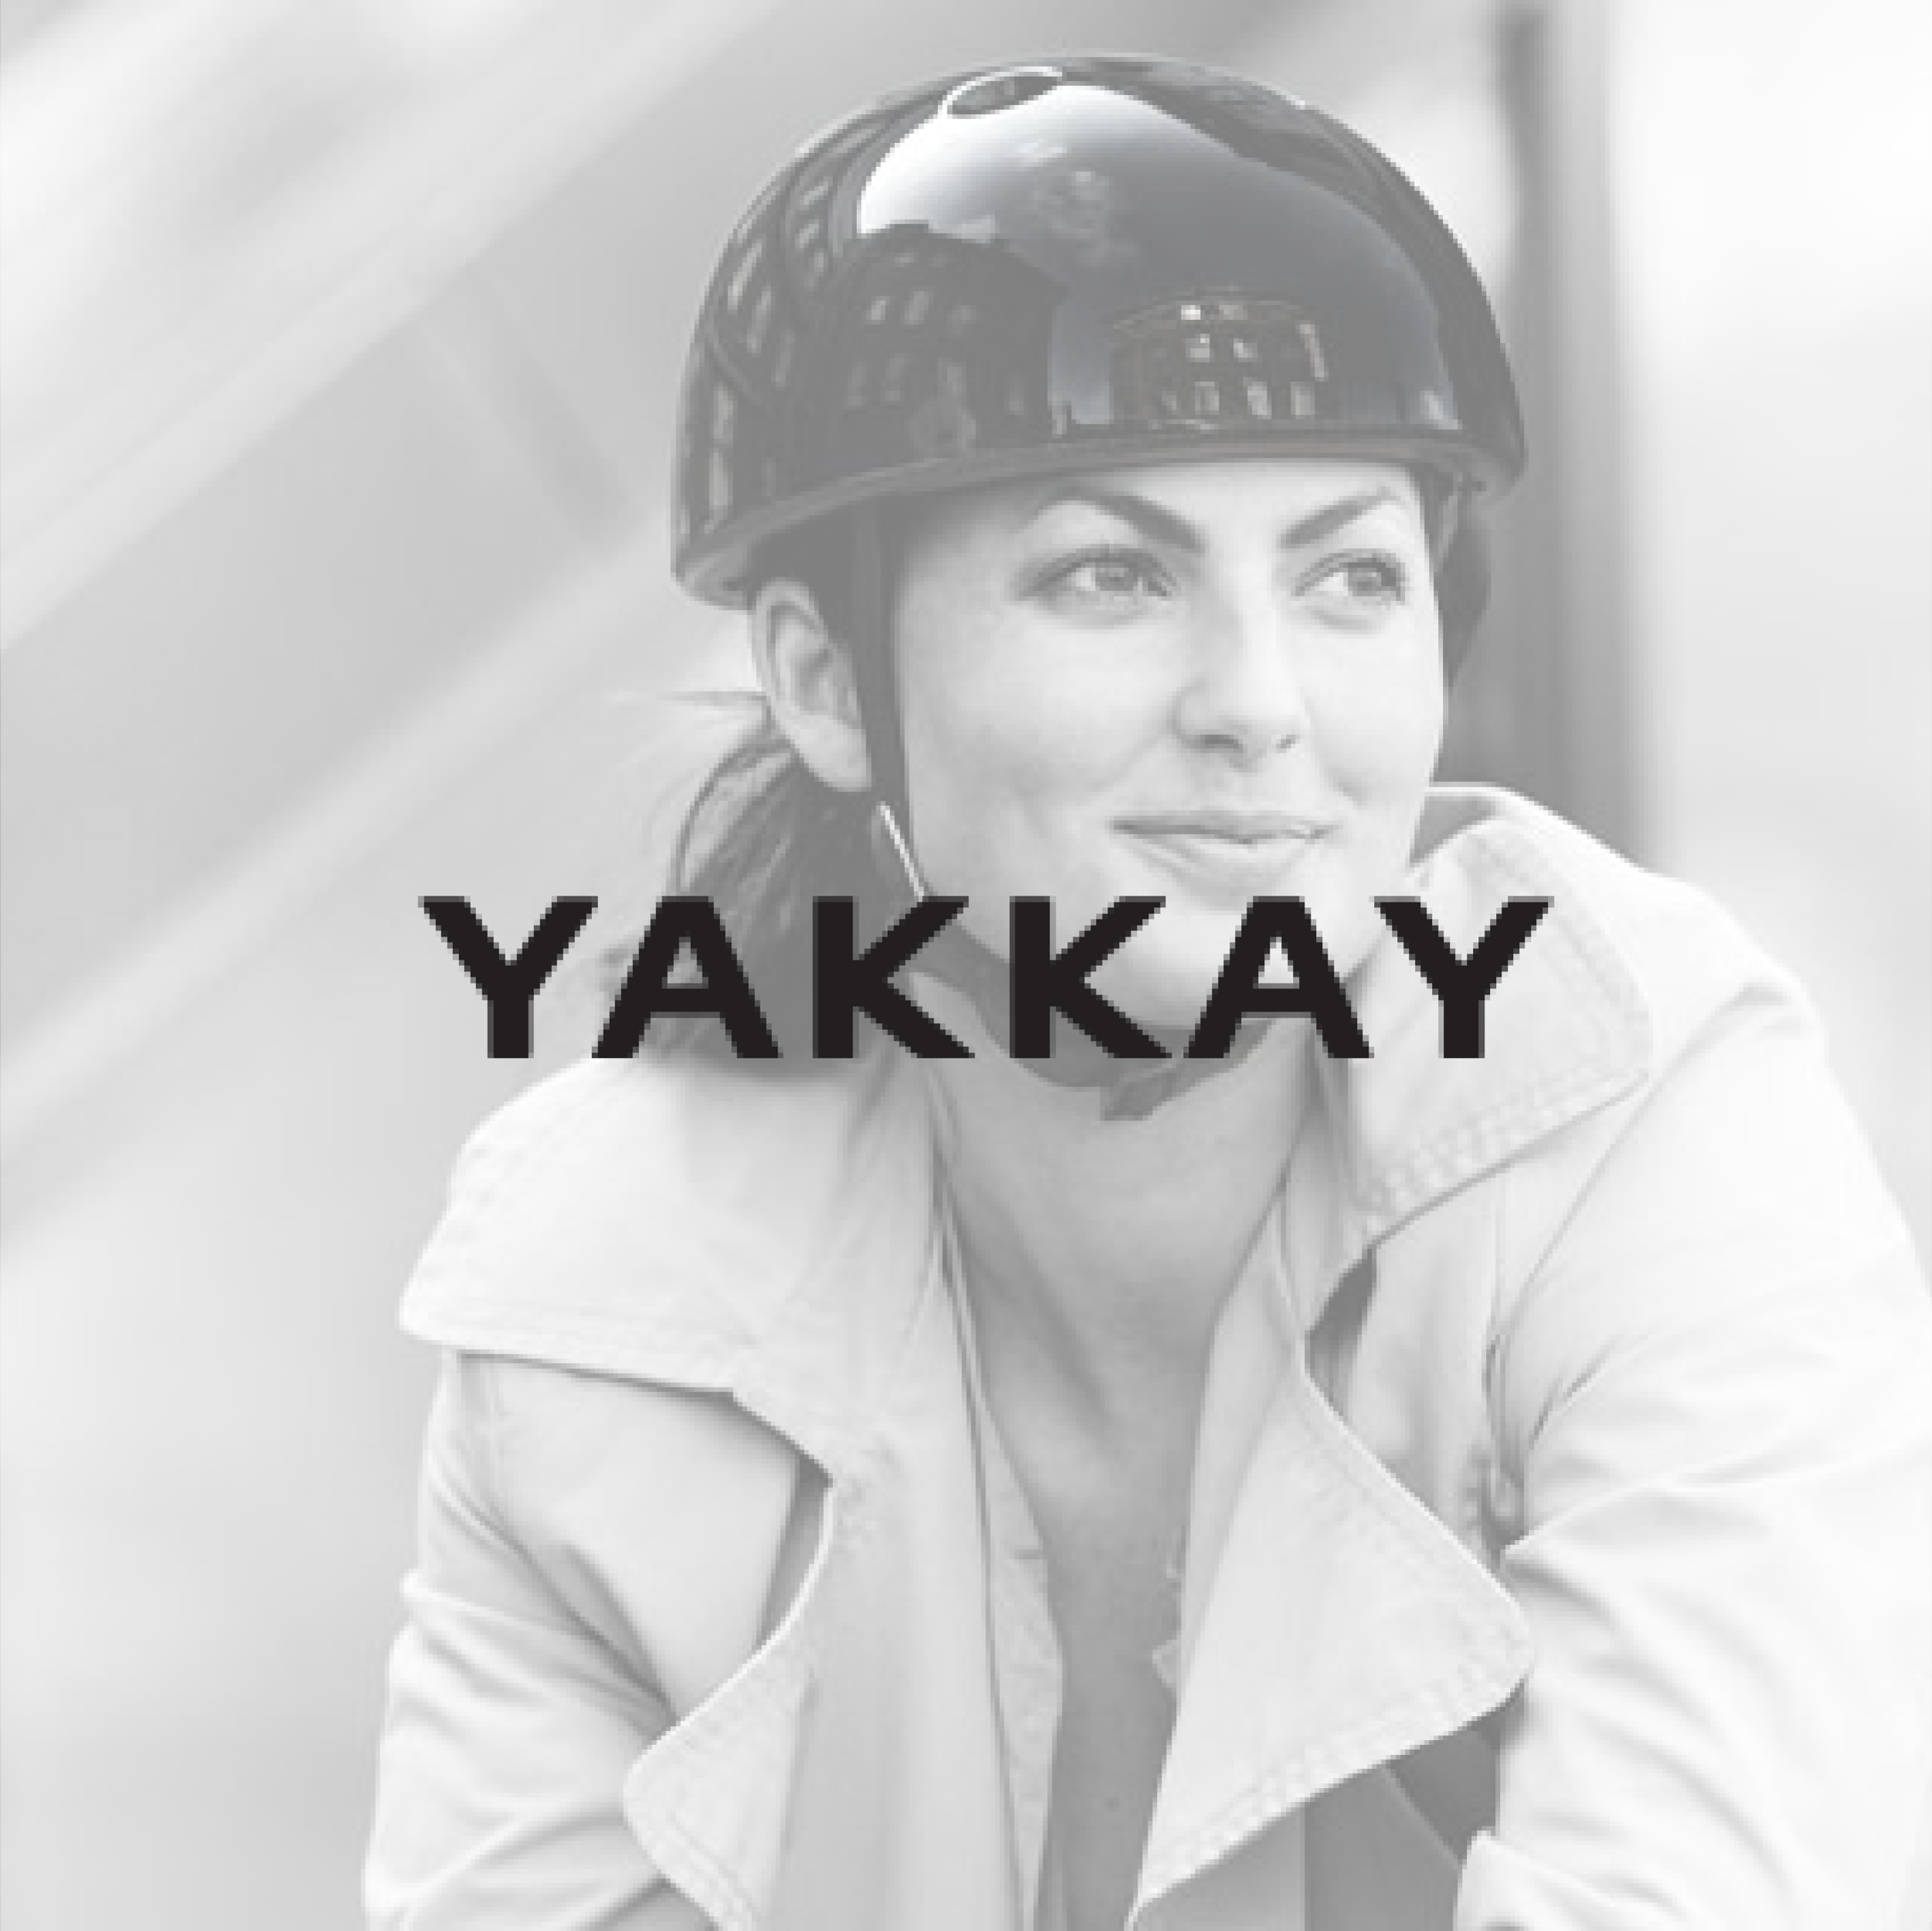 yakkay-12.png